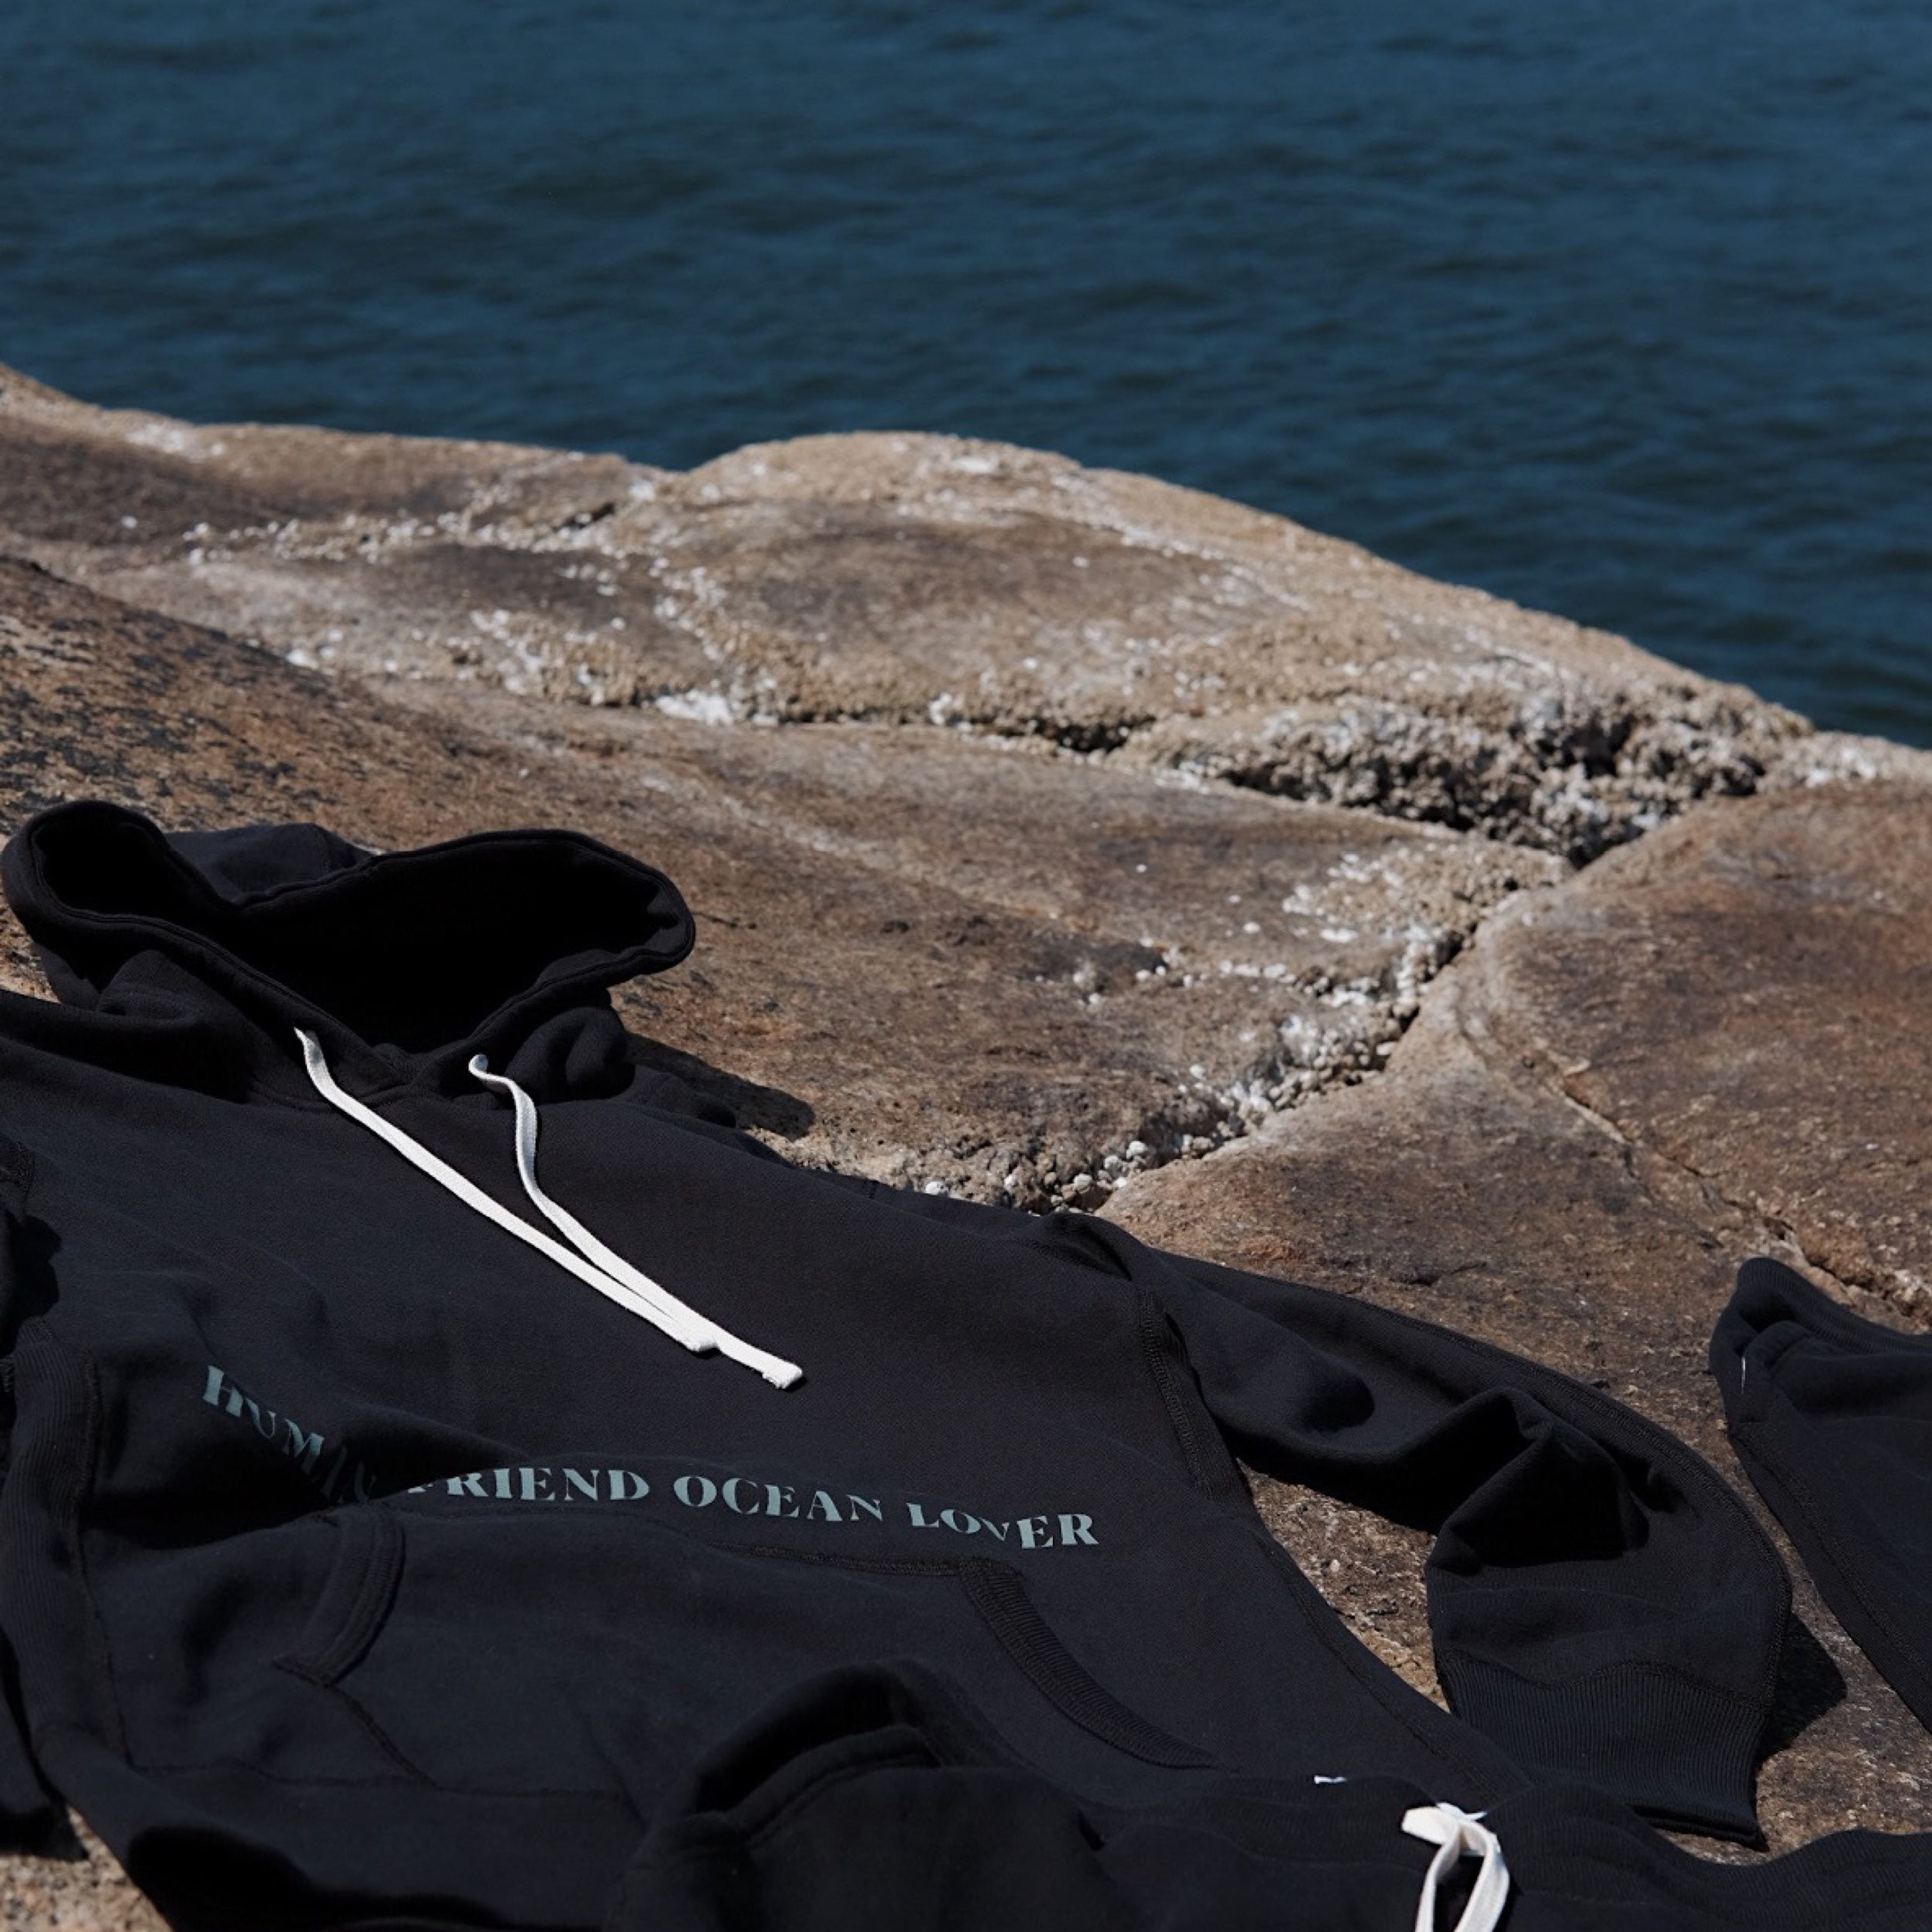 www.ocin.co/products/human-friend-ocean-lover-hoodie